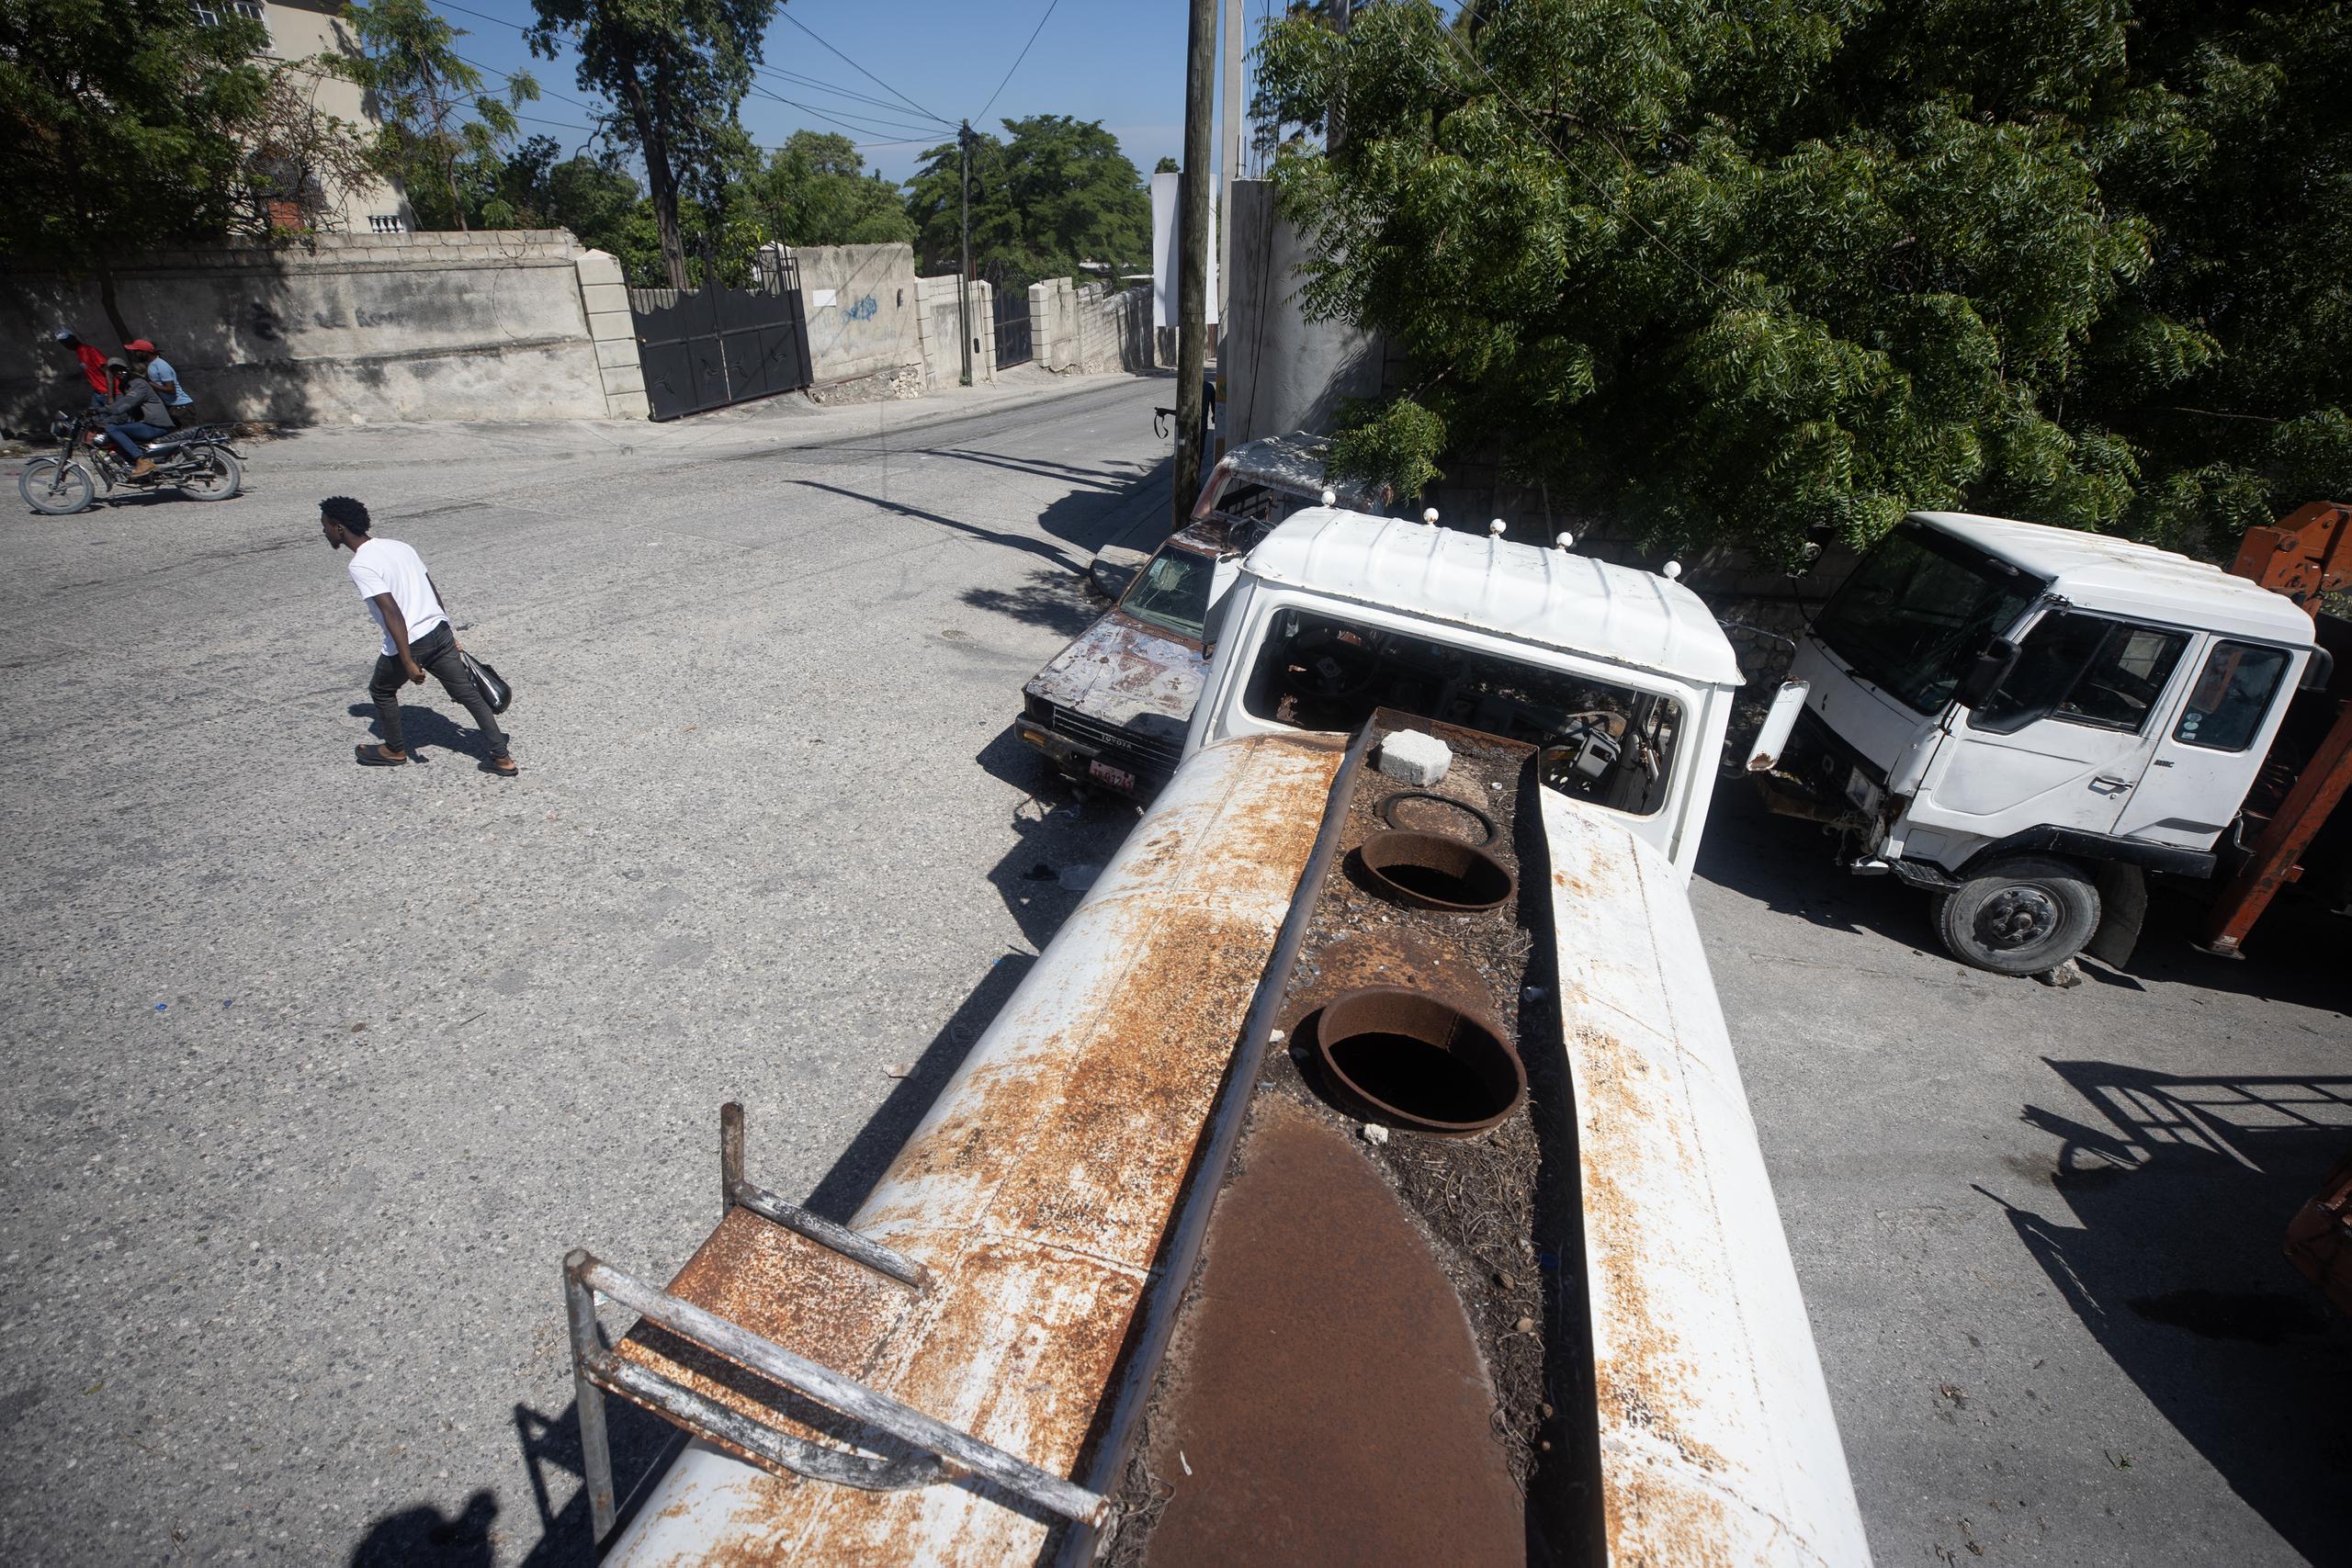 Los residentes de algunos vecindarios en Puerto Principe, han recurrido a bloquear las calles para evitar el acceso de los pandilleros que prácticamente ejercen control de la capital haitiana.